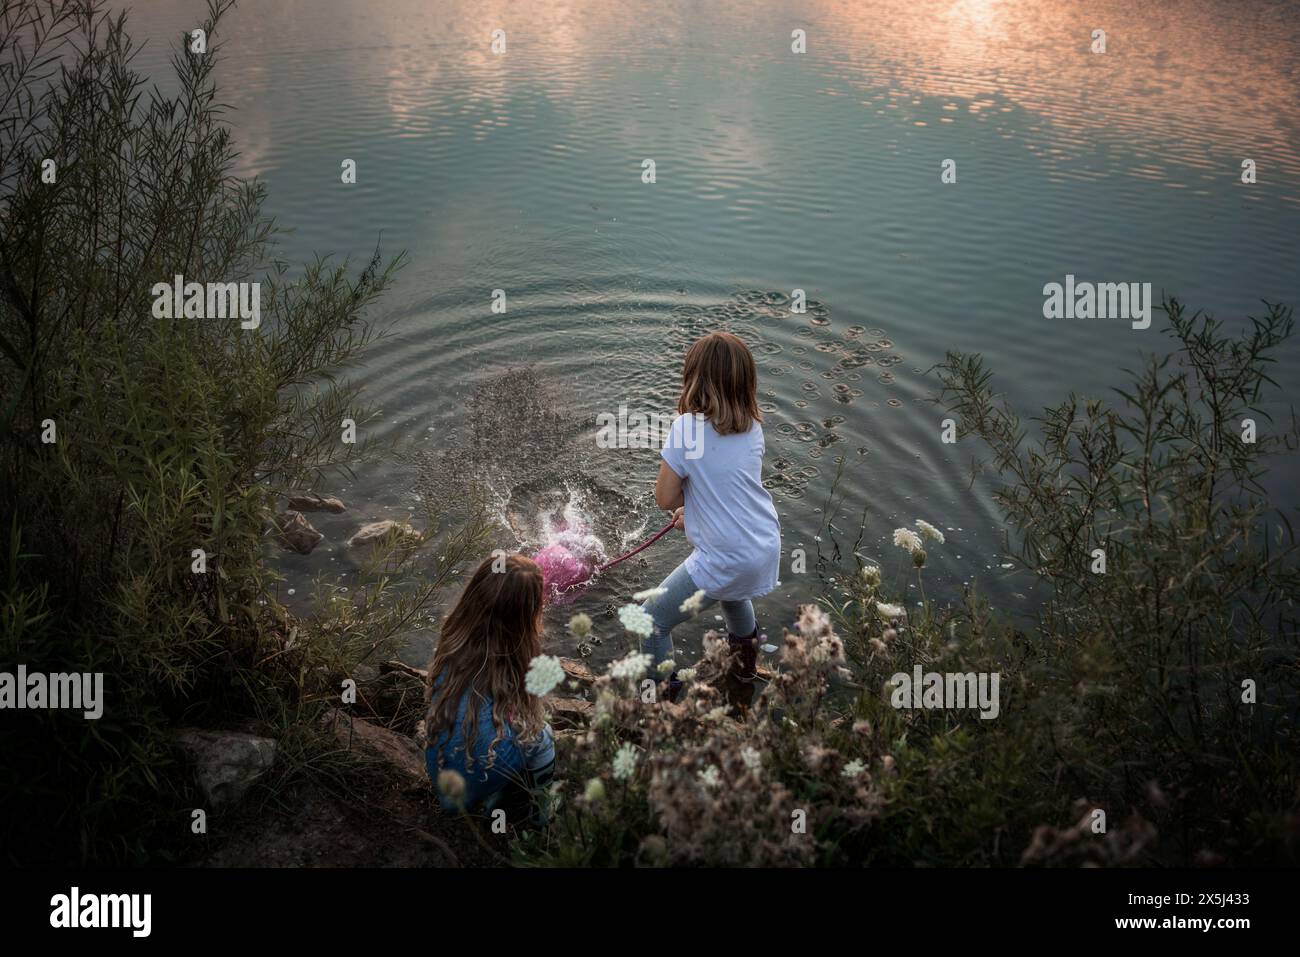 Jeunes enfants éclaboussant de l'eau dans le lac au coucher du soleil Banque D'Images